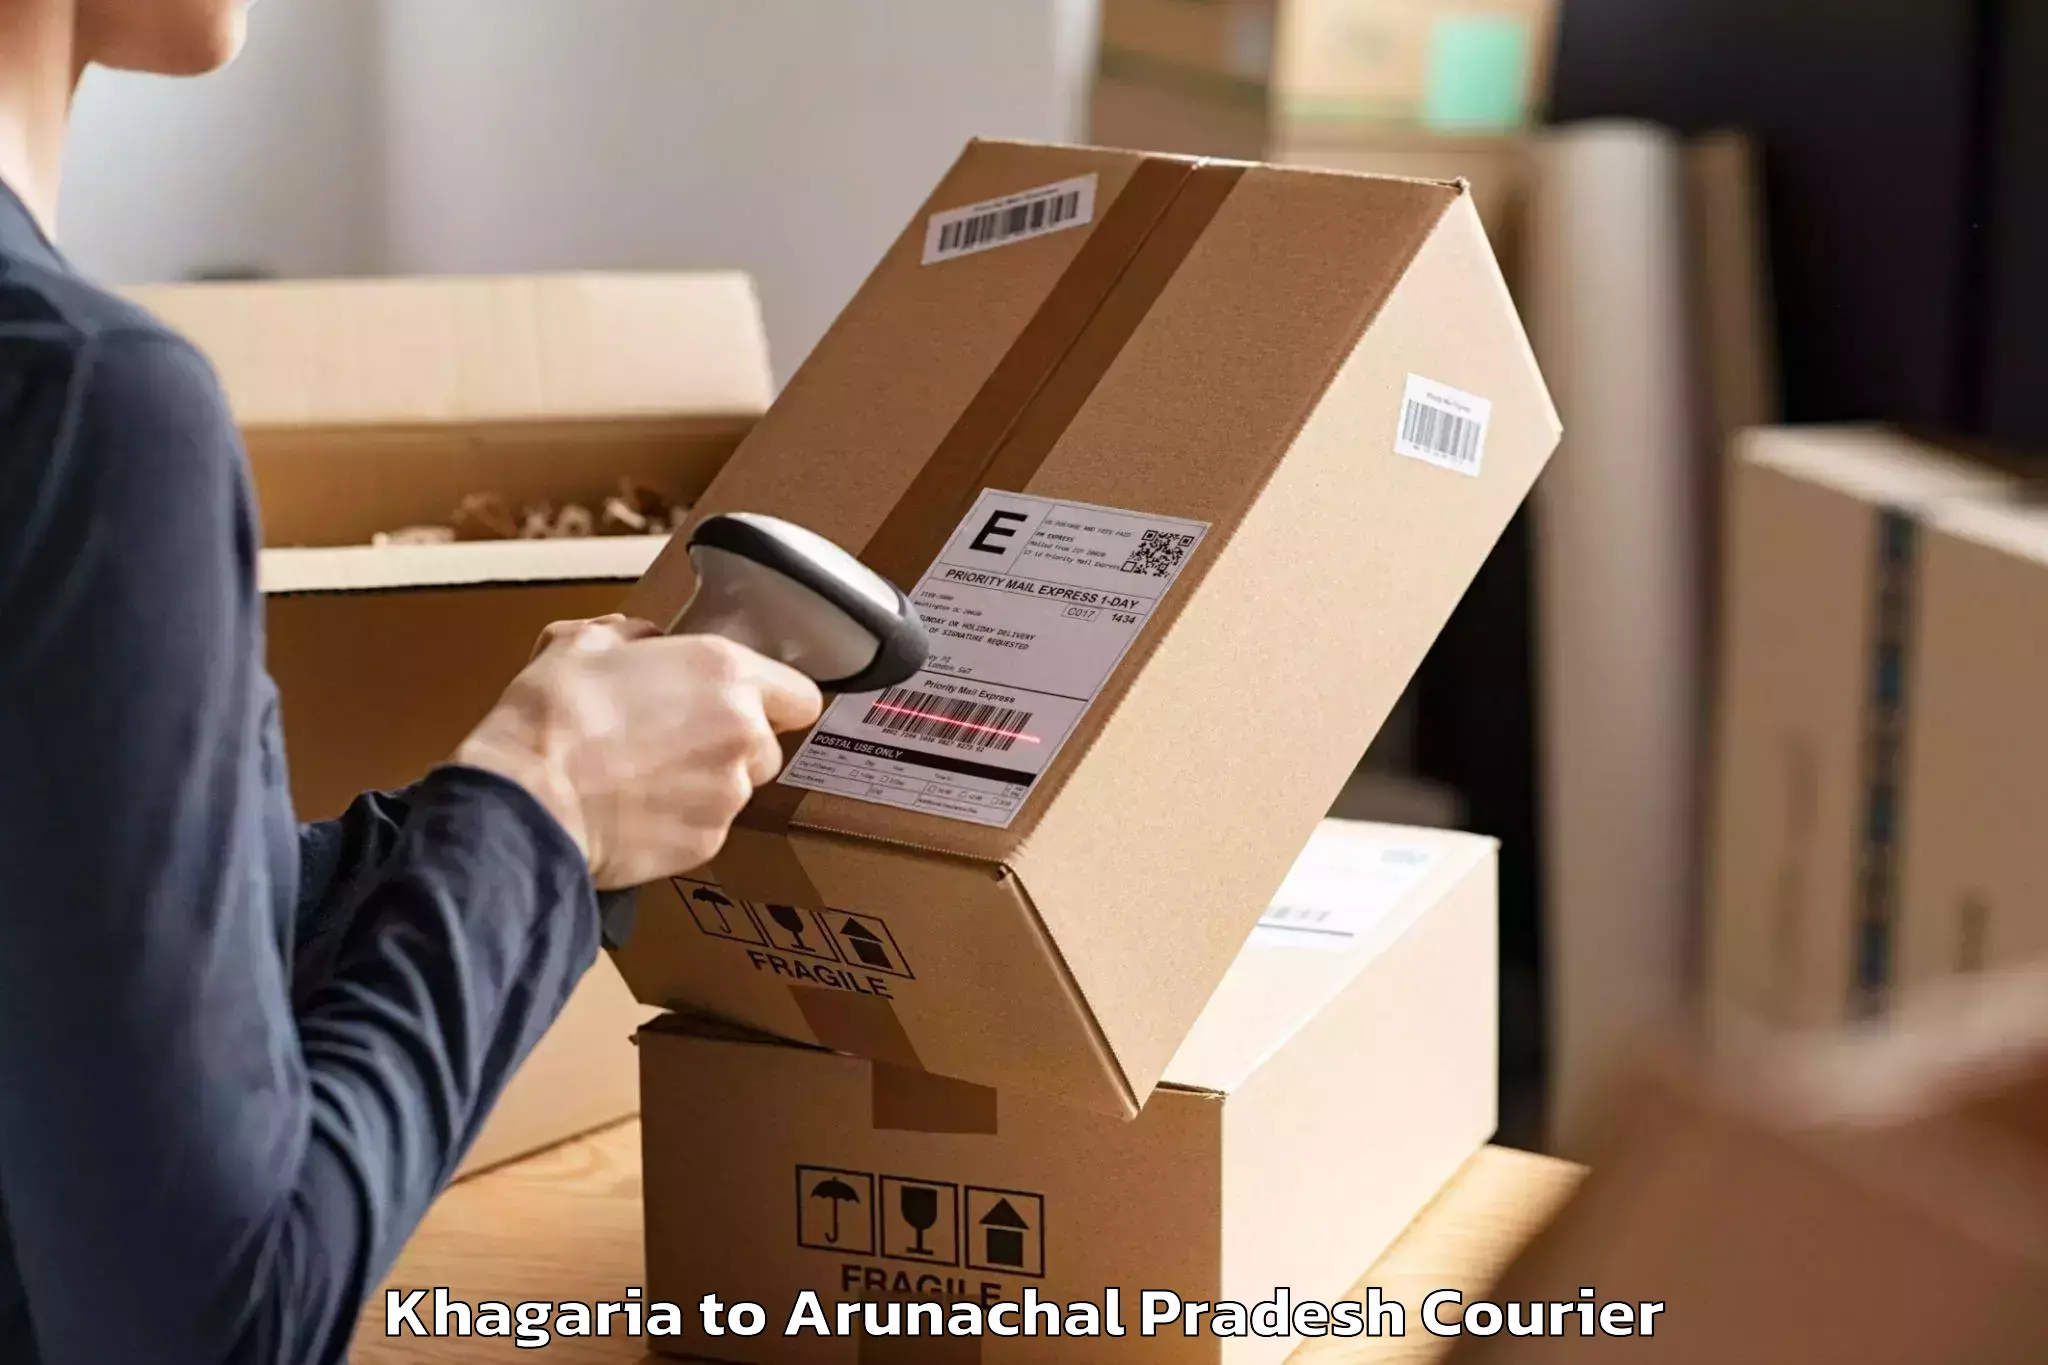 Moving and packing experts Khagaria to Arunachal Pradesh